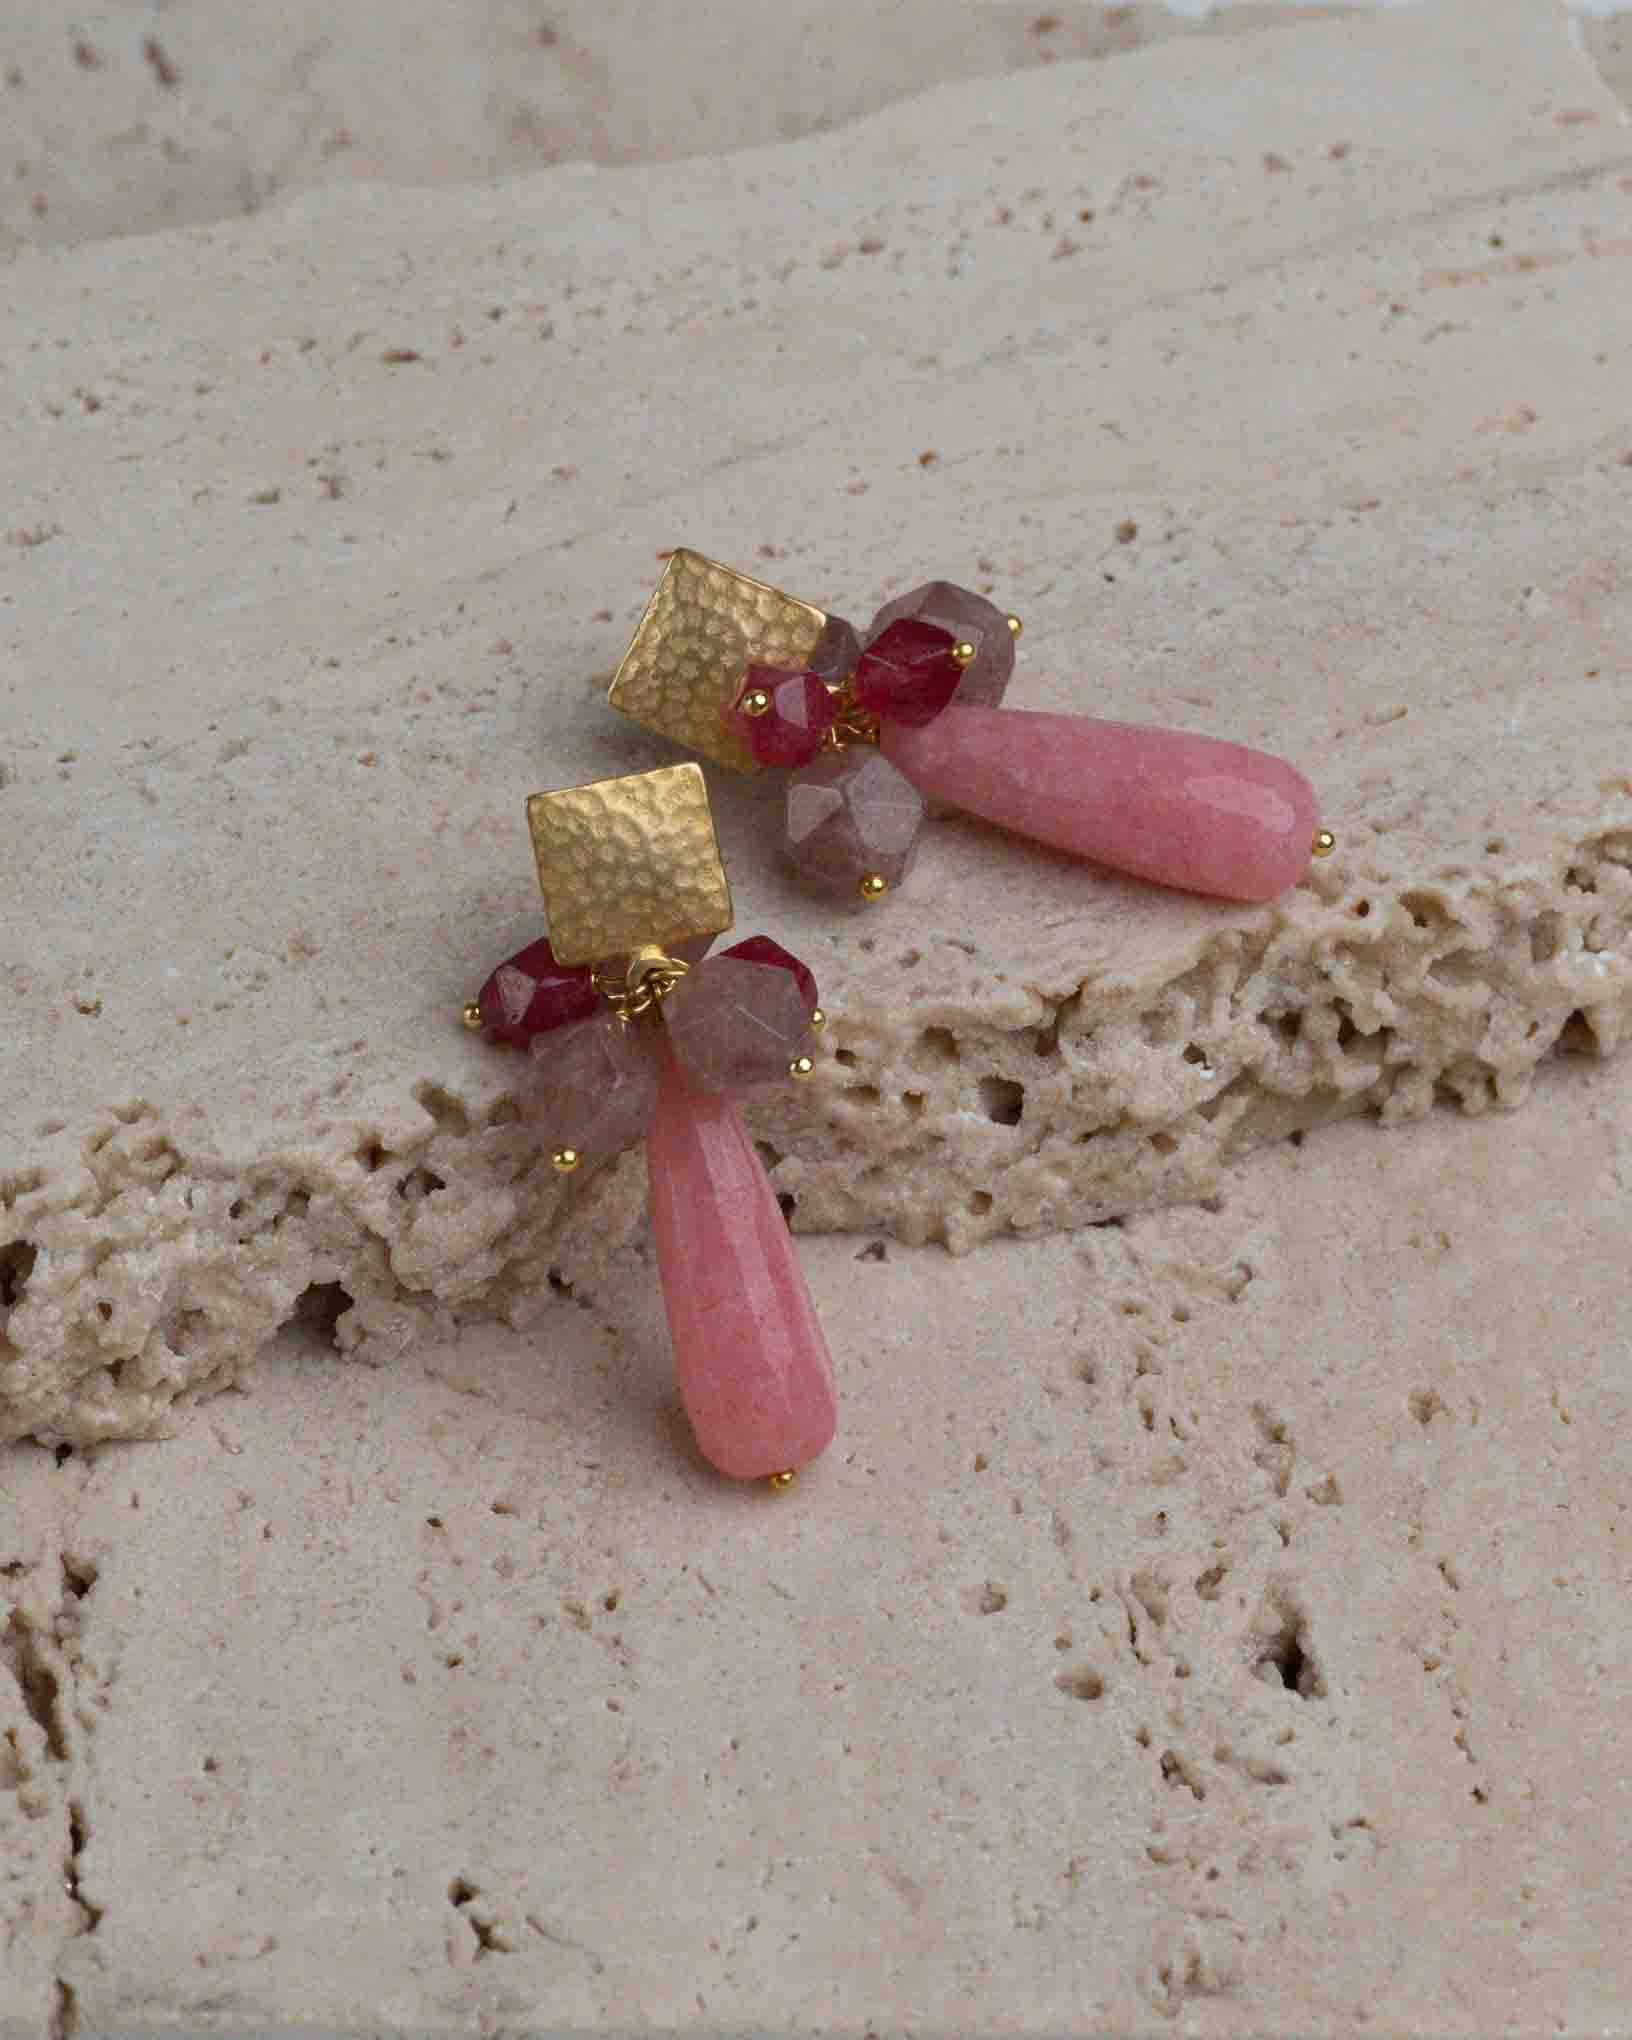 Ohrring Vino Rosso aus der Kollektion I Classici von Donna Rachele Jewelry